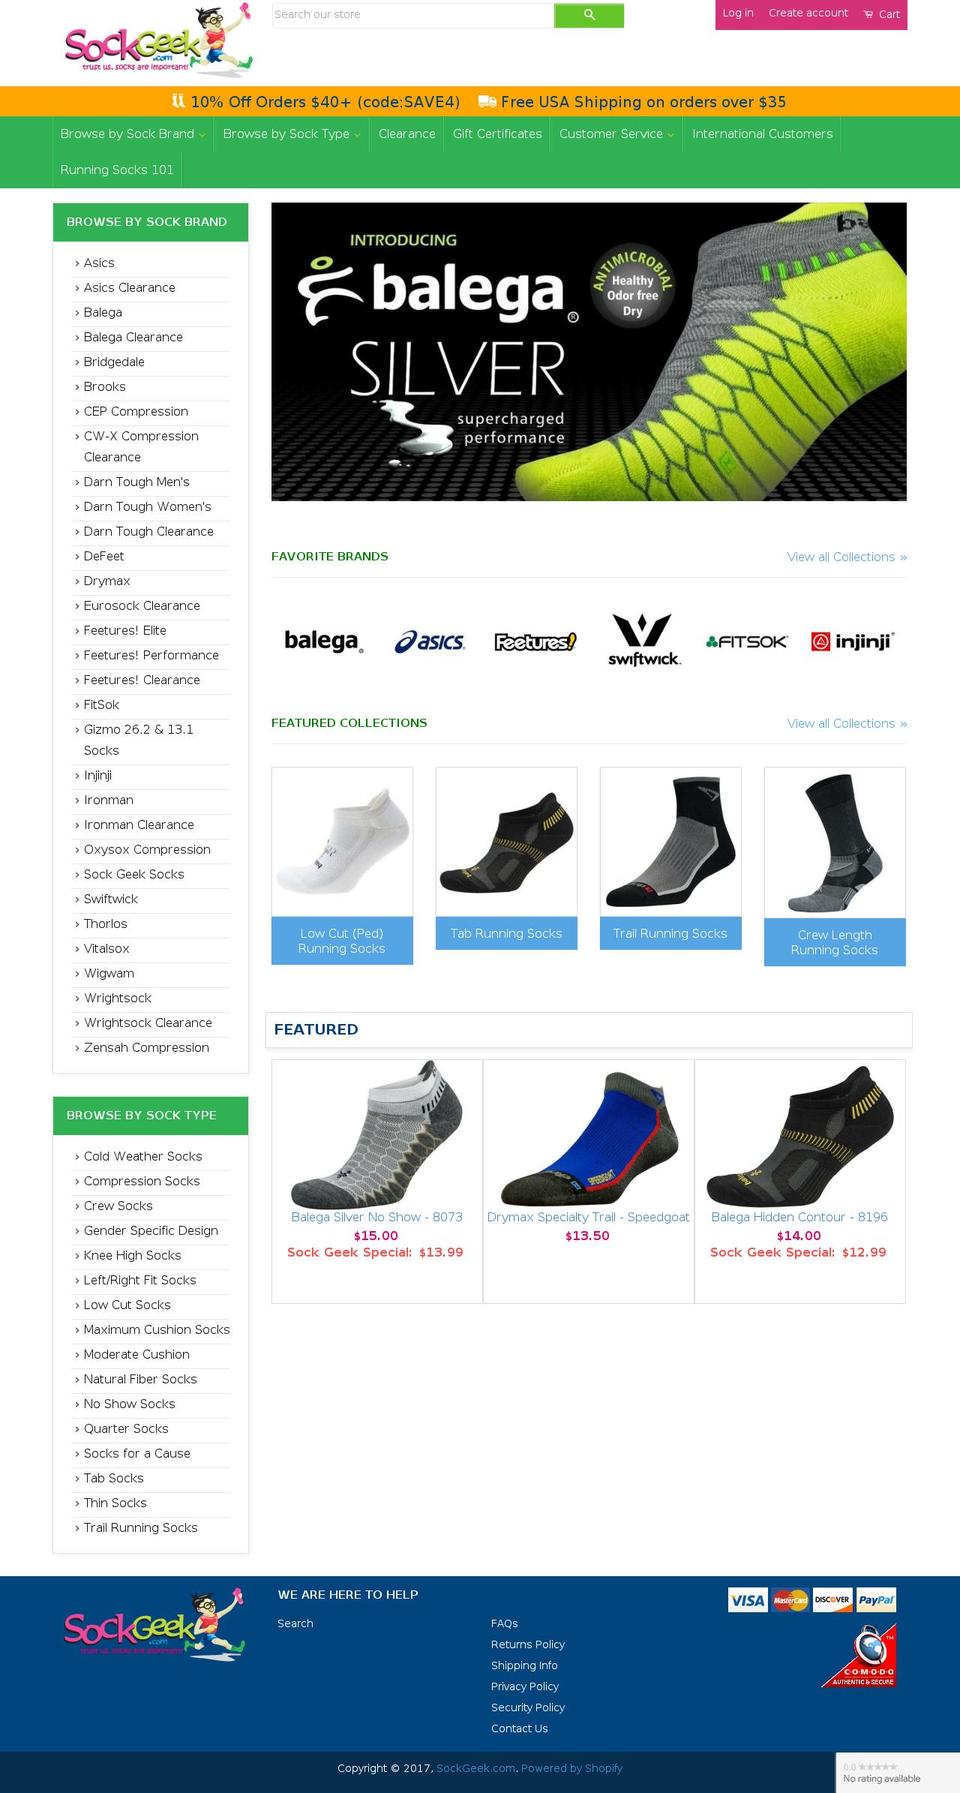 sockgeek.com shopify website screenshot